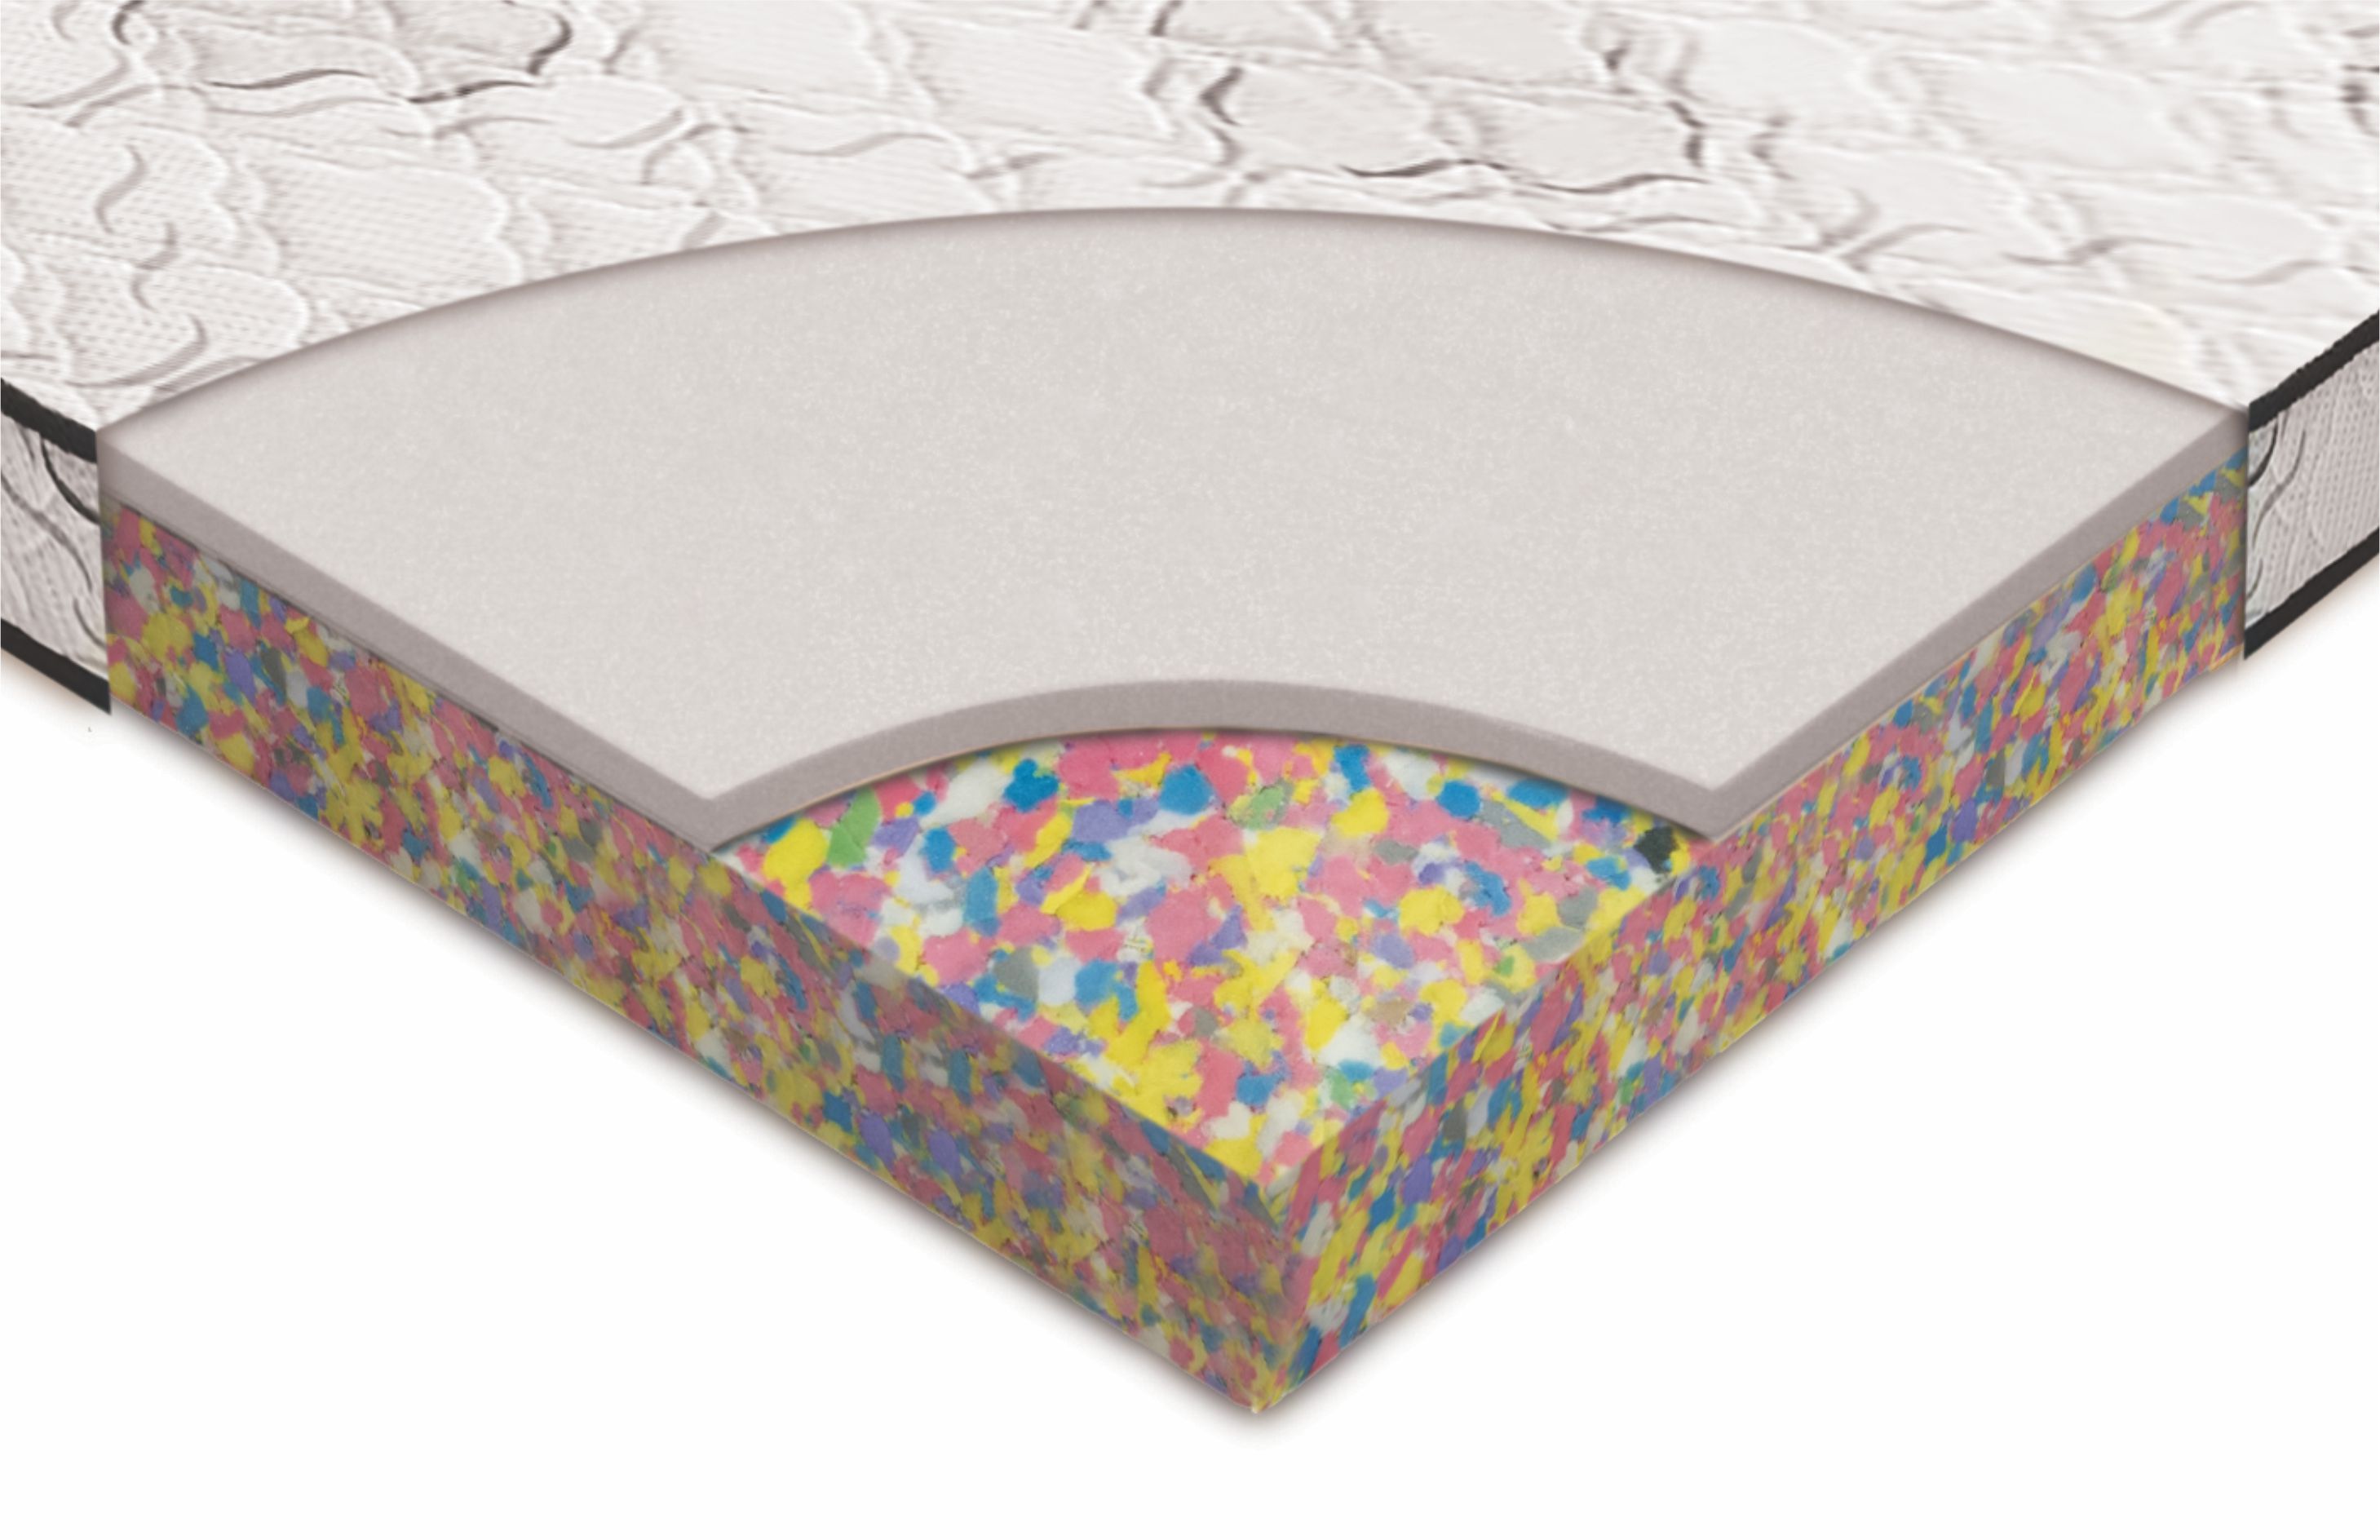 bonded foam mattress vs coir mattress